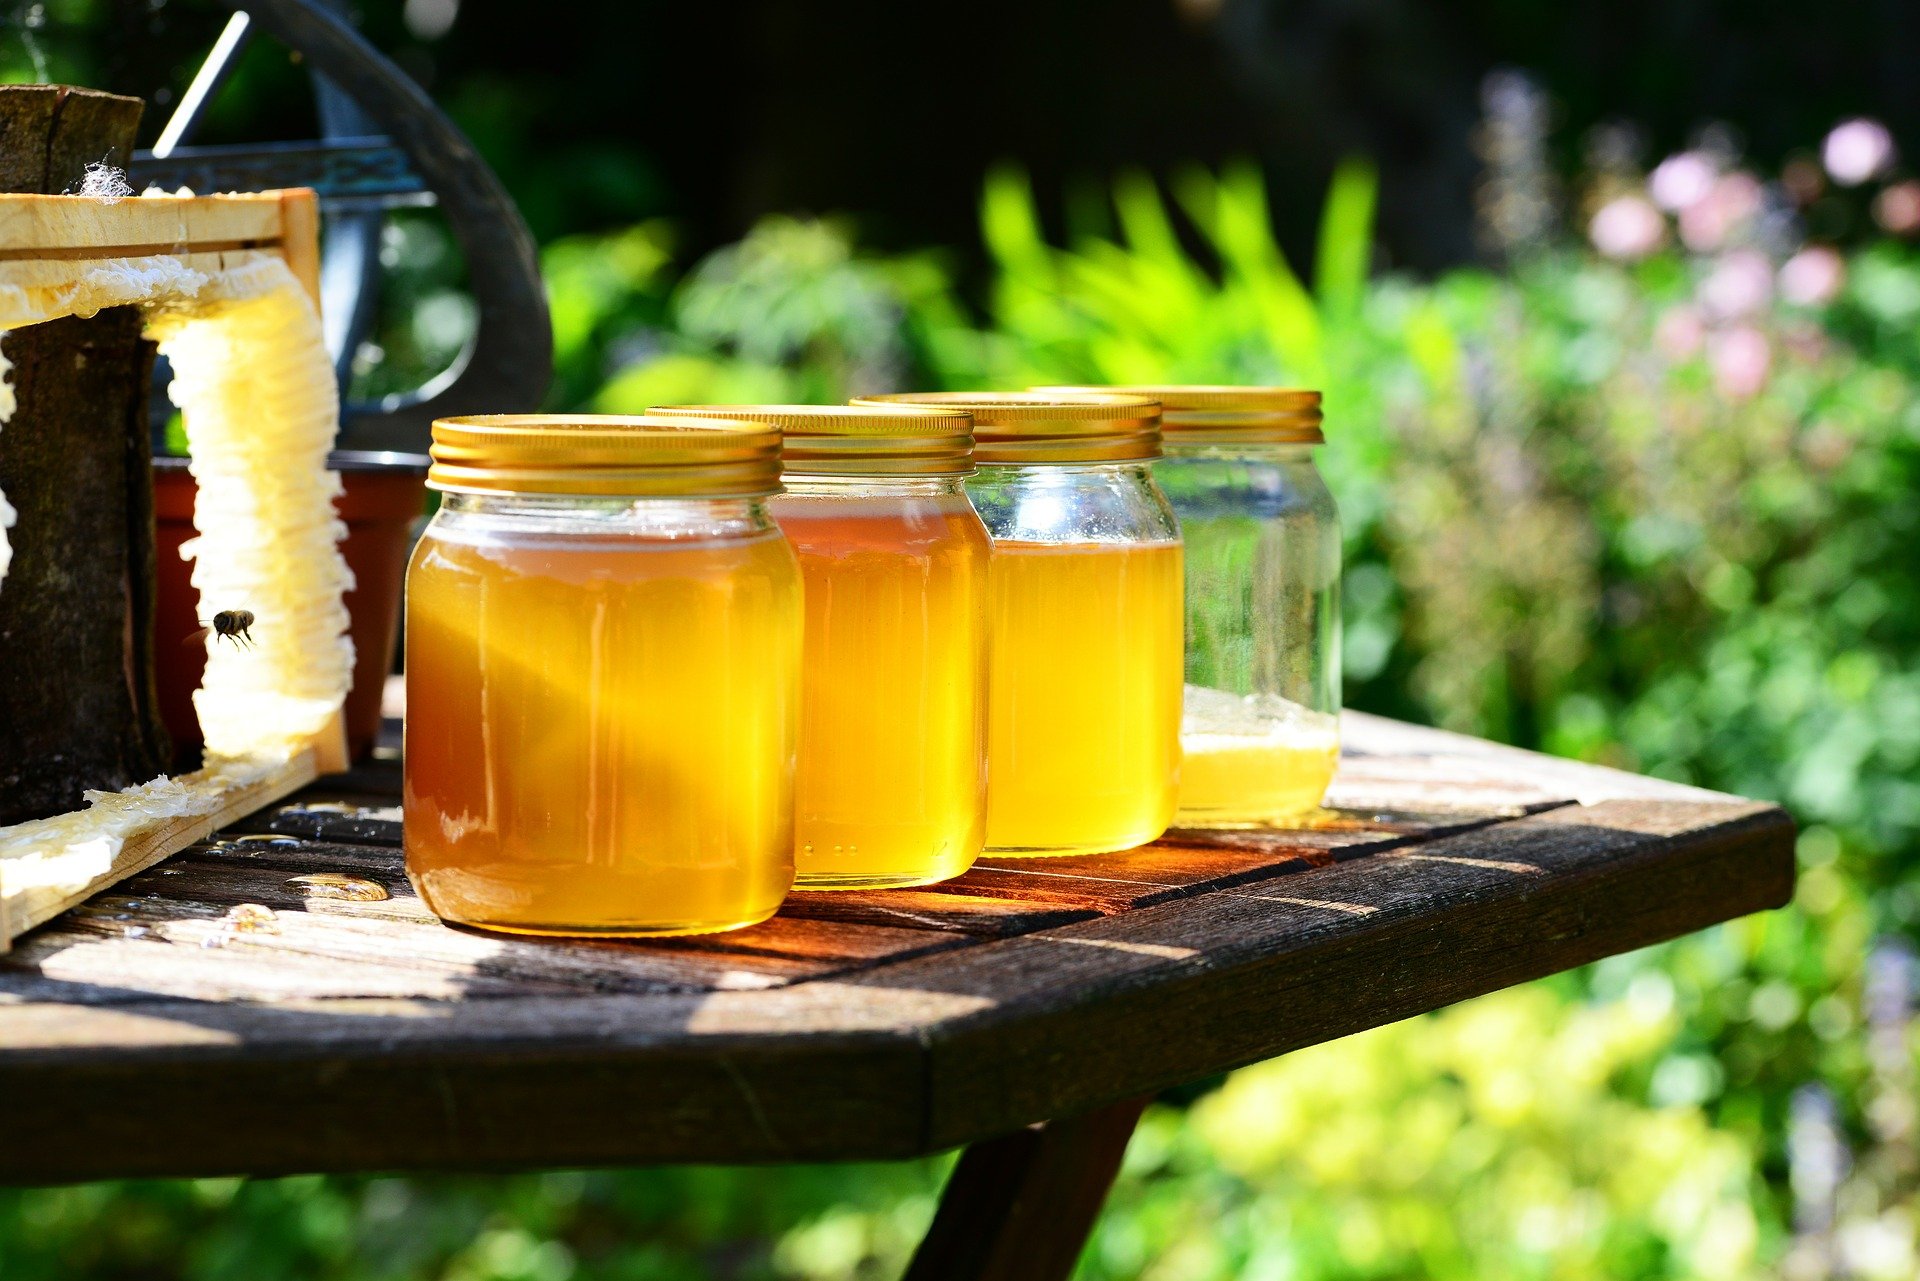 Honig in Ungarn wird teurer, Akazienhonig kann zur Mangelware werden